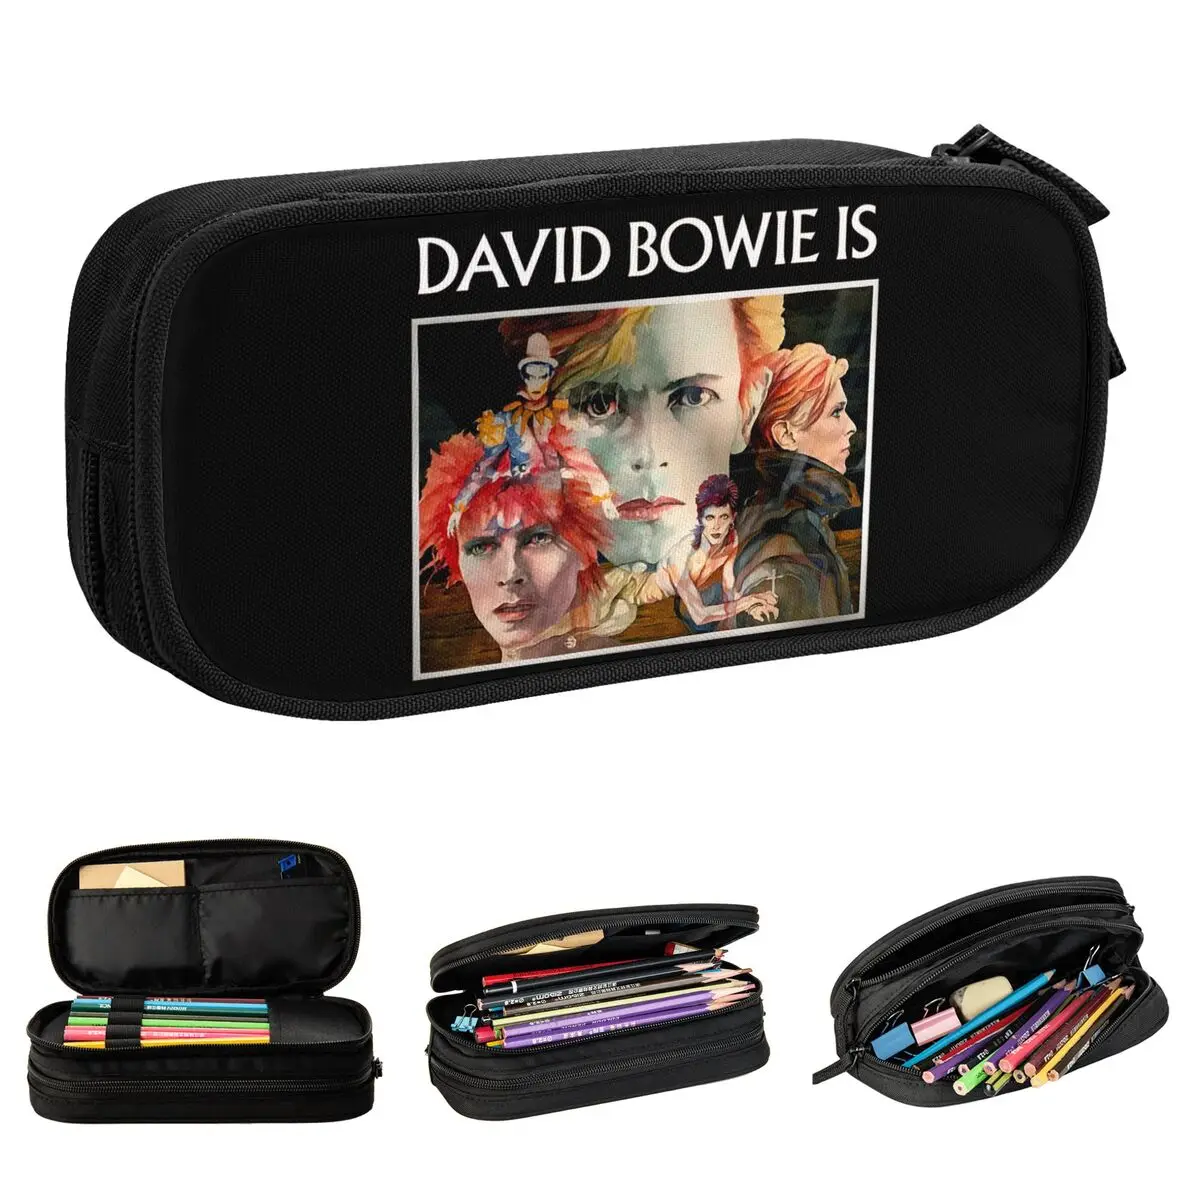 Davids Bowies Singer Пенал Креативная сумка для ручек Студенческая Большая Сумка для хранения Студенческие Школьные Пеналы на молнии